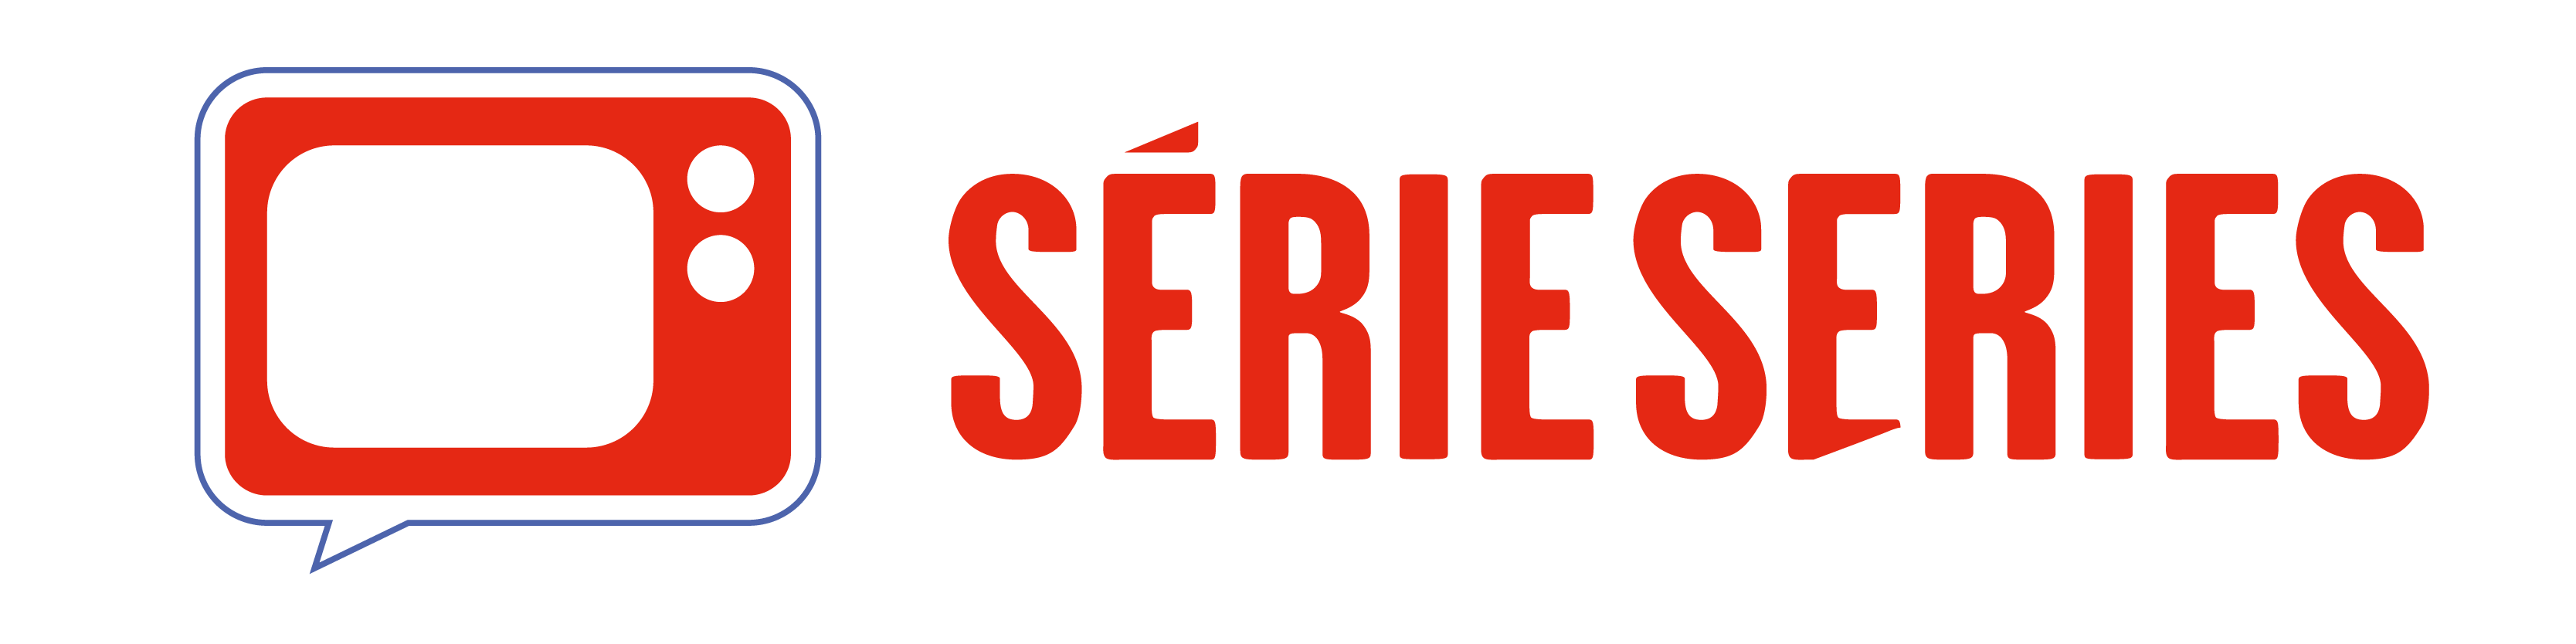 Series series